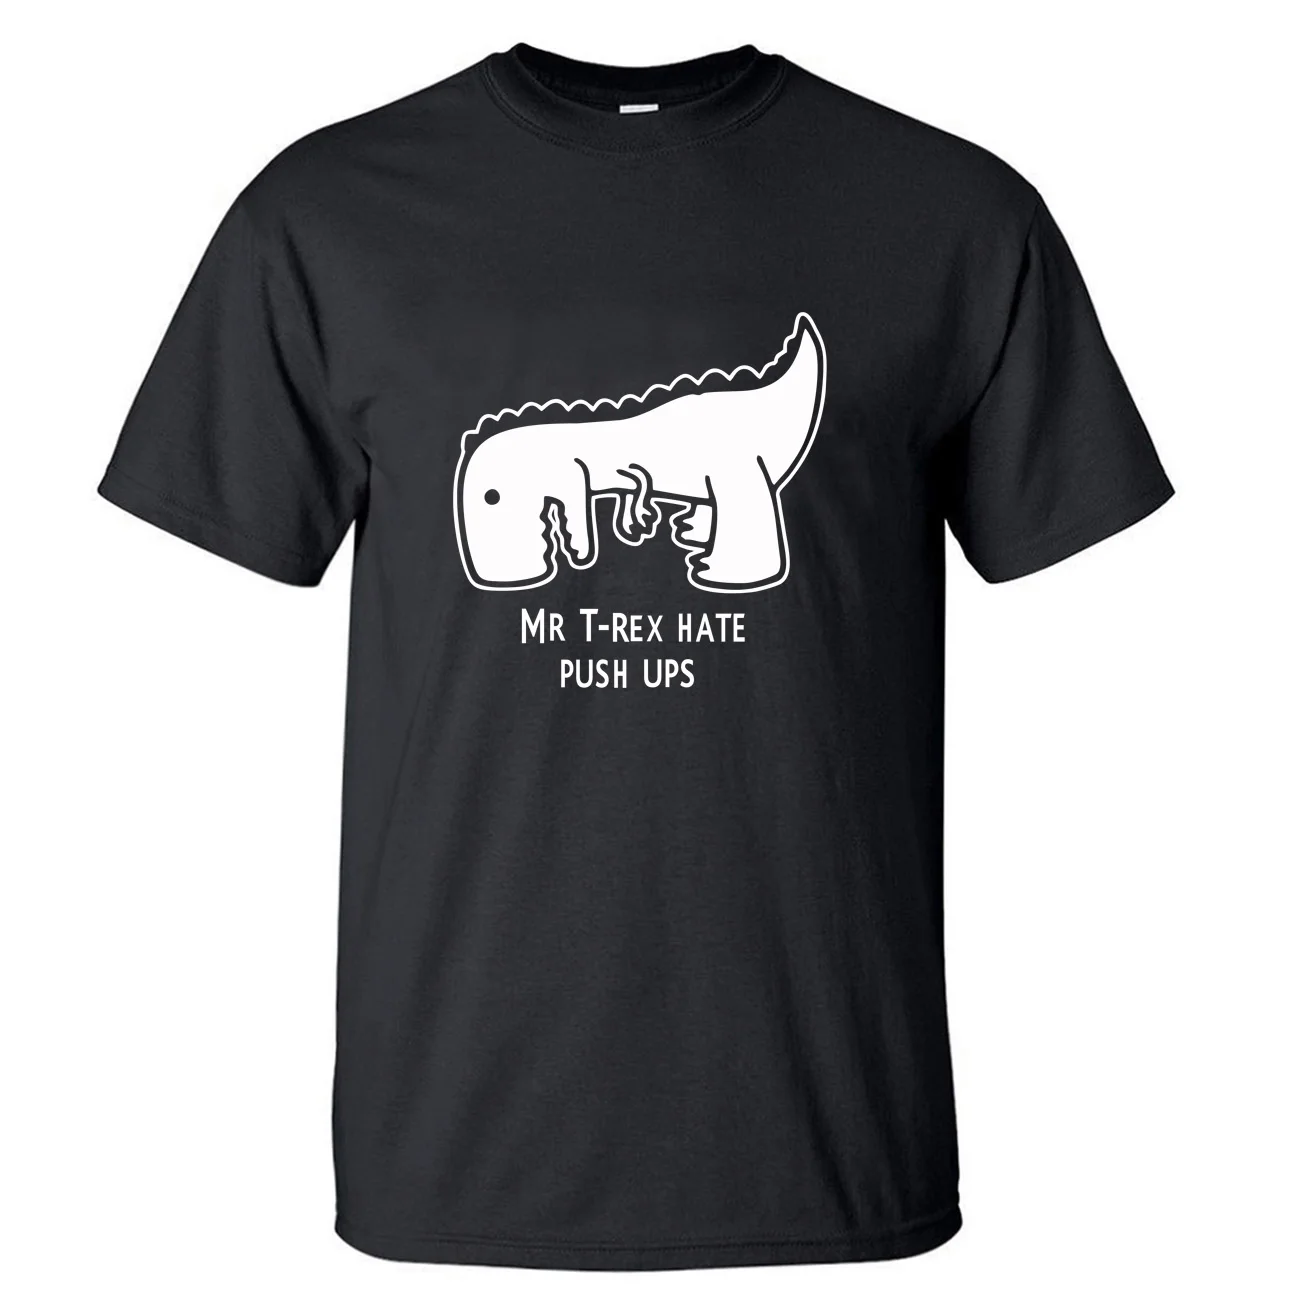 

Футболка Mr T rex Hate с эффектом пуш-ап, женская футболка с динозавром, летняя хлопковая черная белая аниме футболка с коротким рукавом